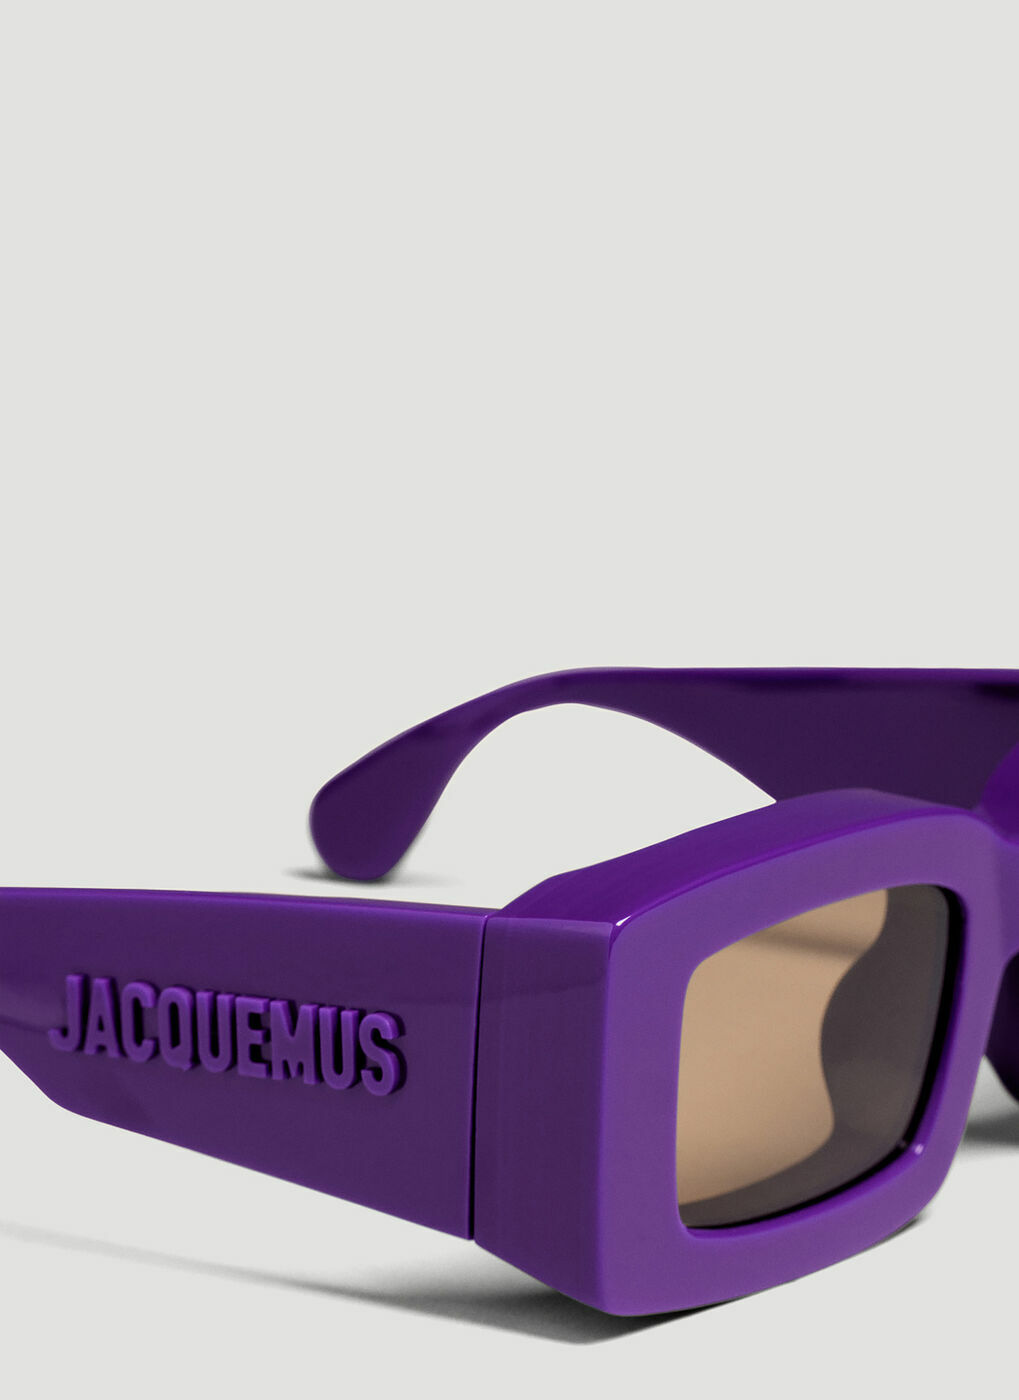 Jacquemus - Les Lunettes Tupi Sunglasses in Purple Jacquemus